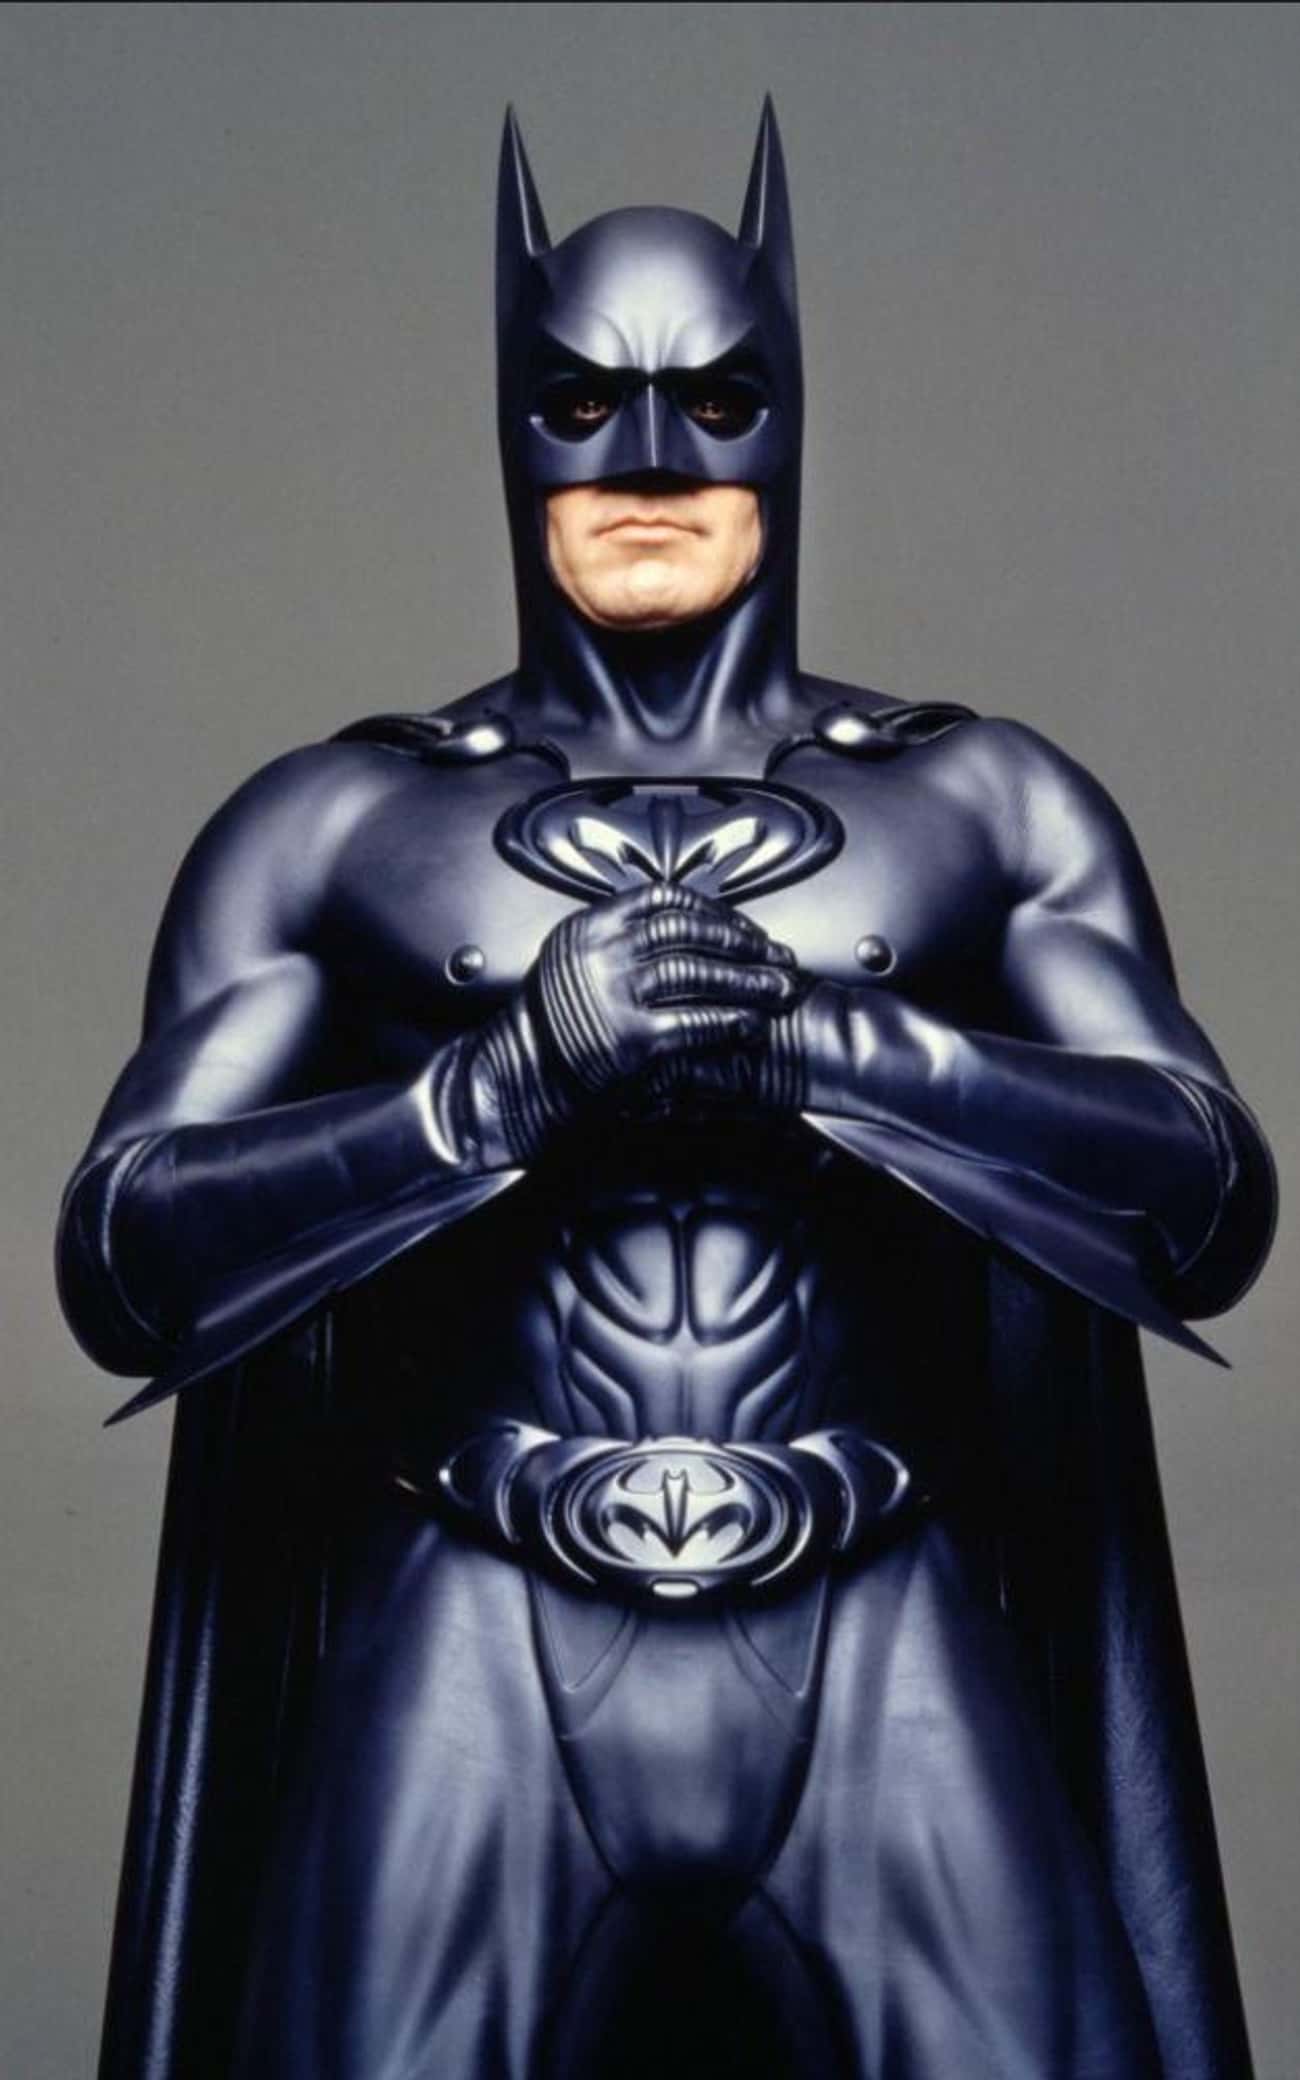 George Clooney As Batman